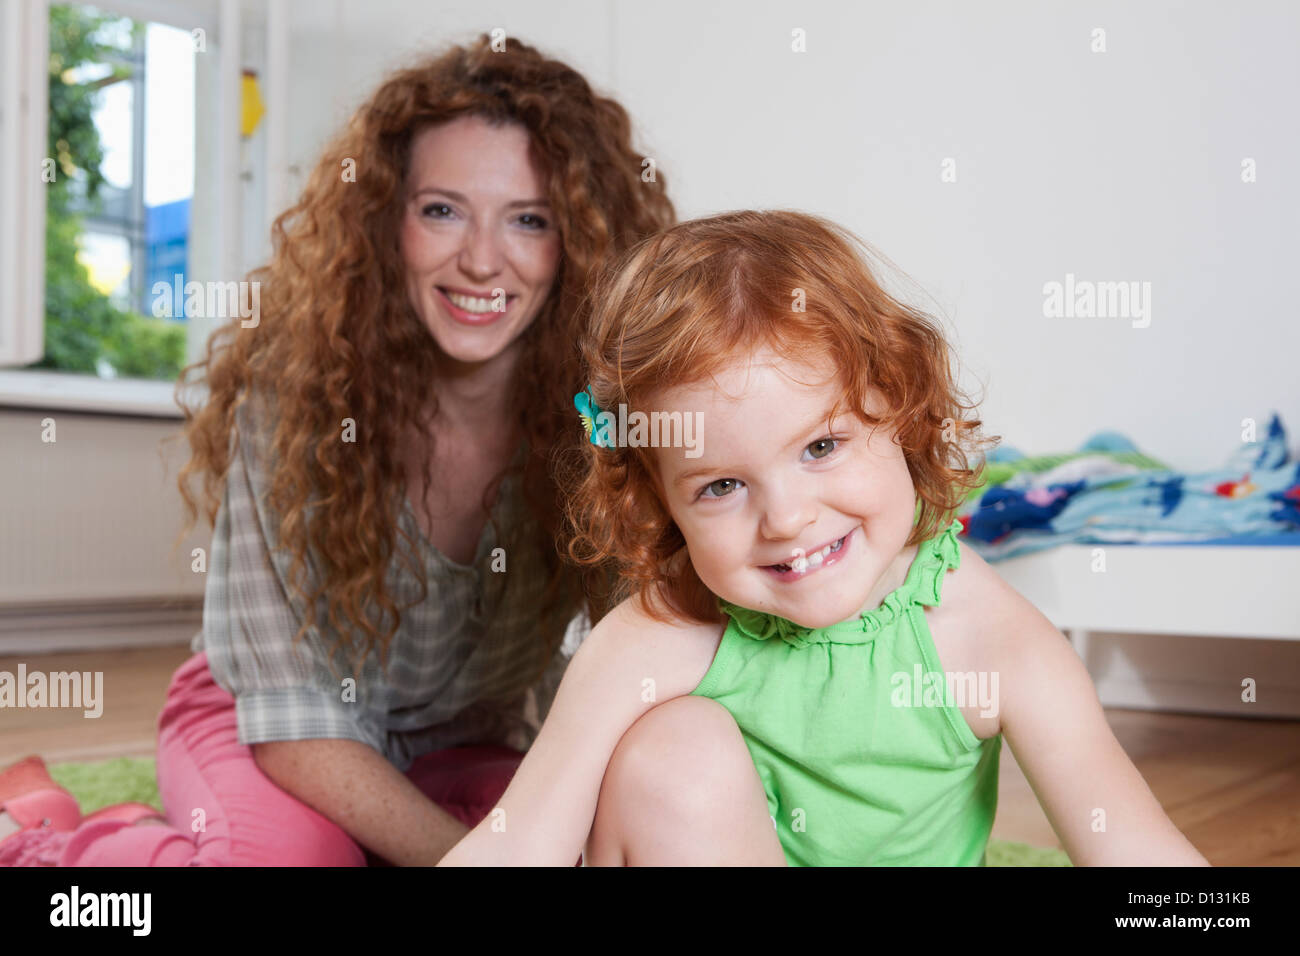 Germania Berlino, madre e figlia, sorridente, ritratto Foto Stock